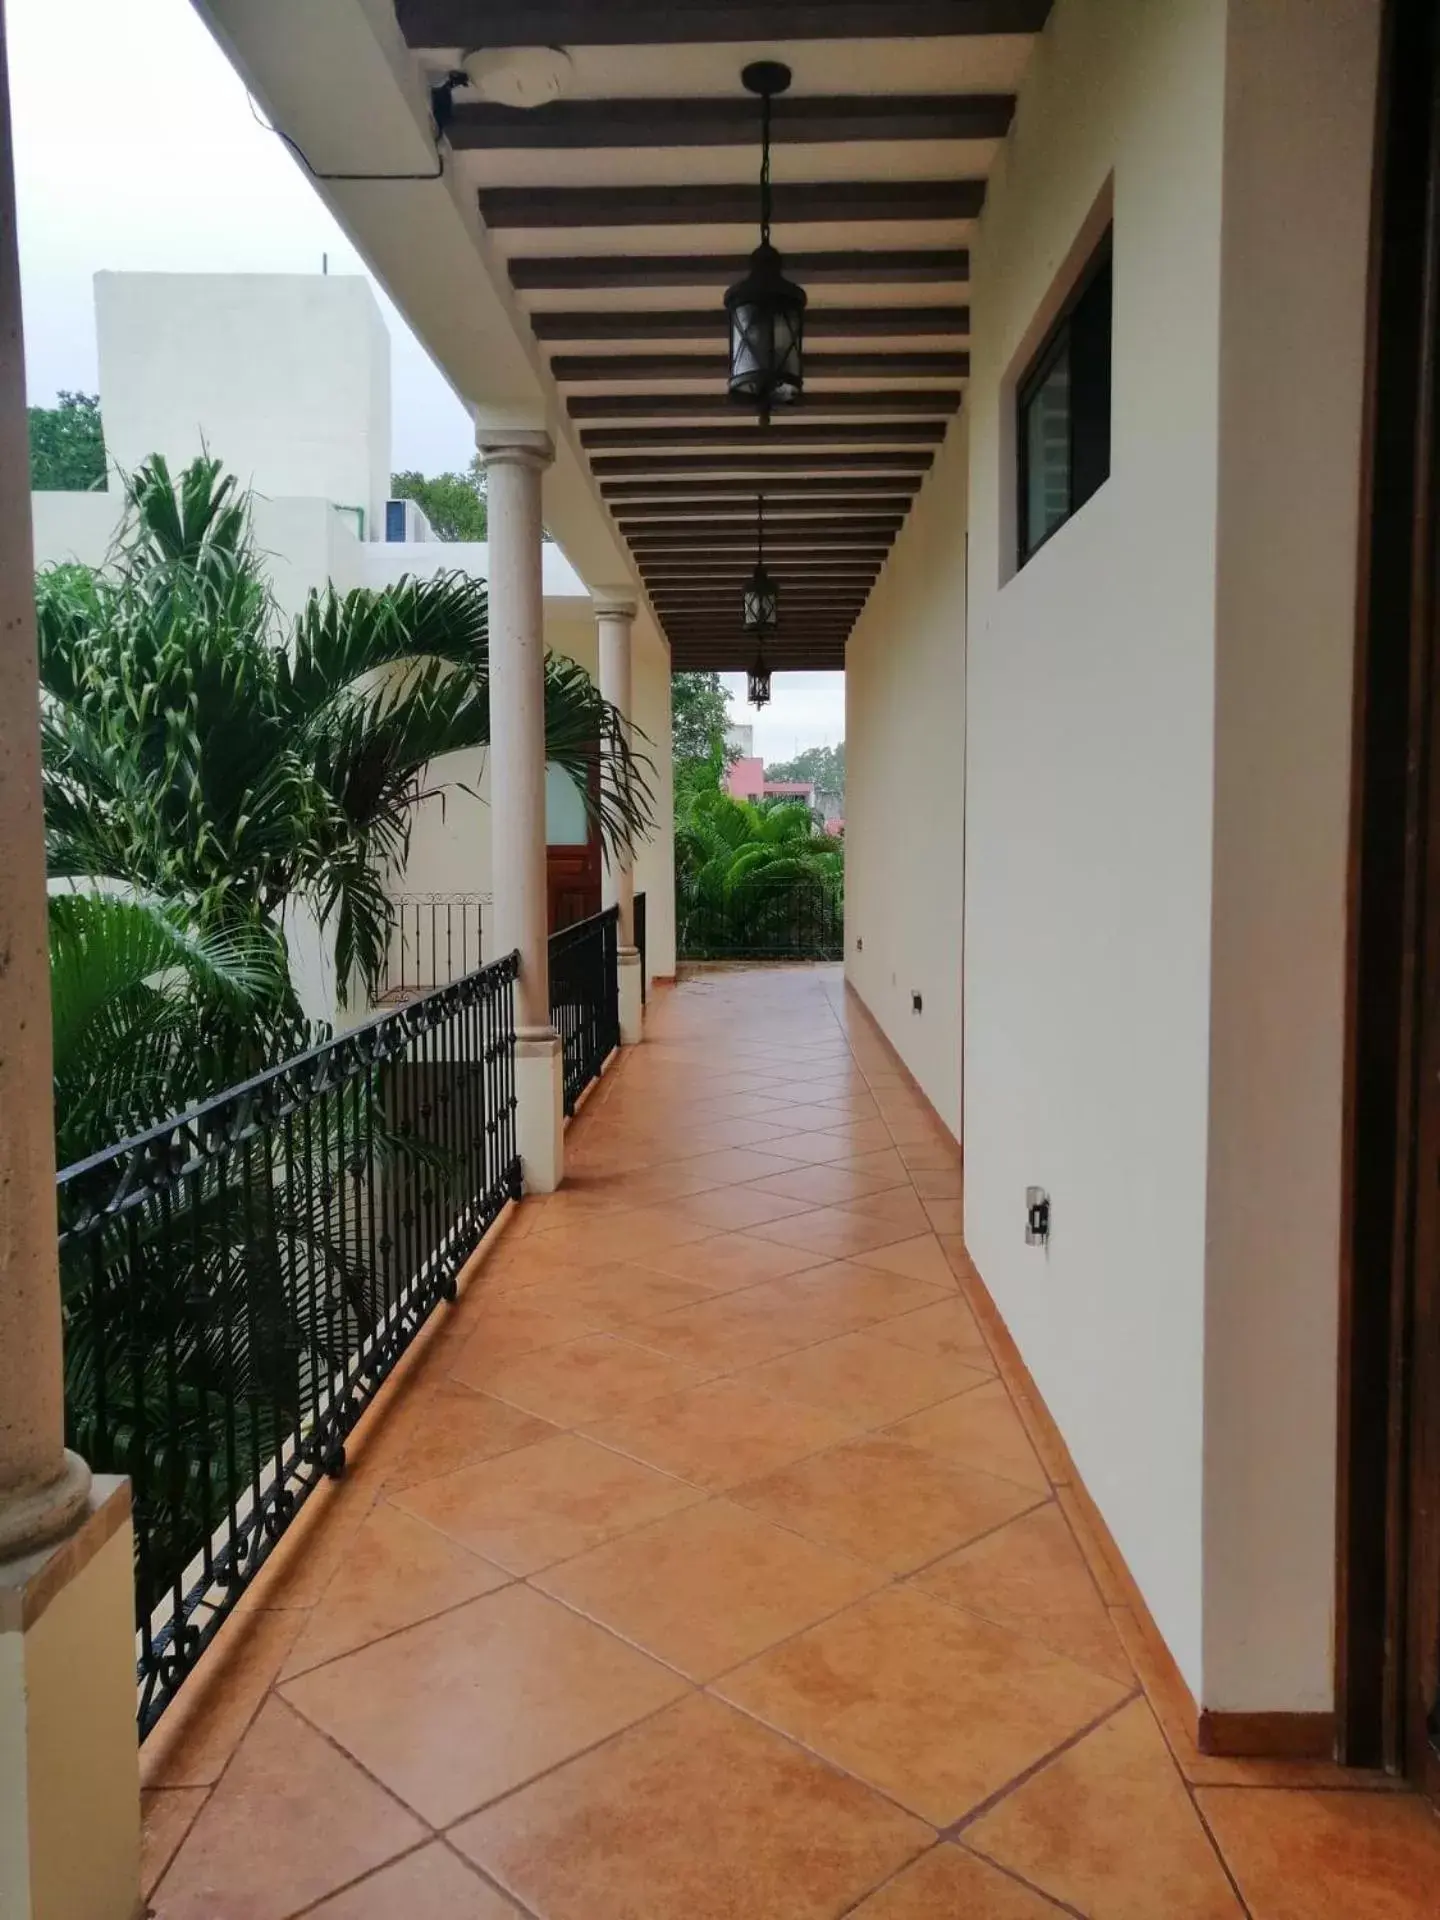 Area and facilities, Balcony/Terrace in Casa San Roque Valladolid